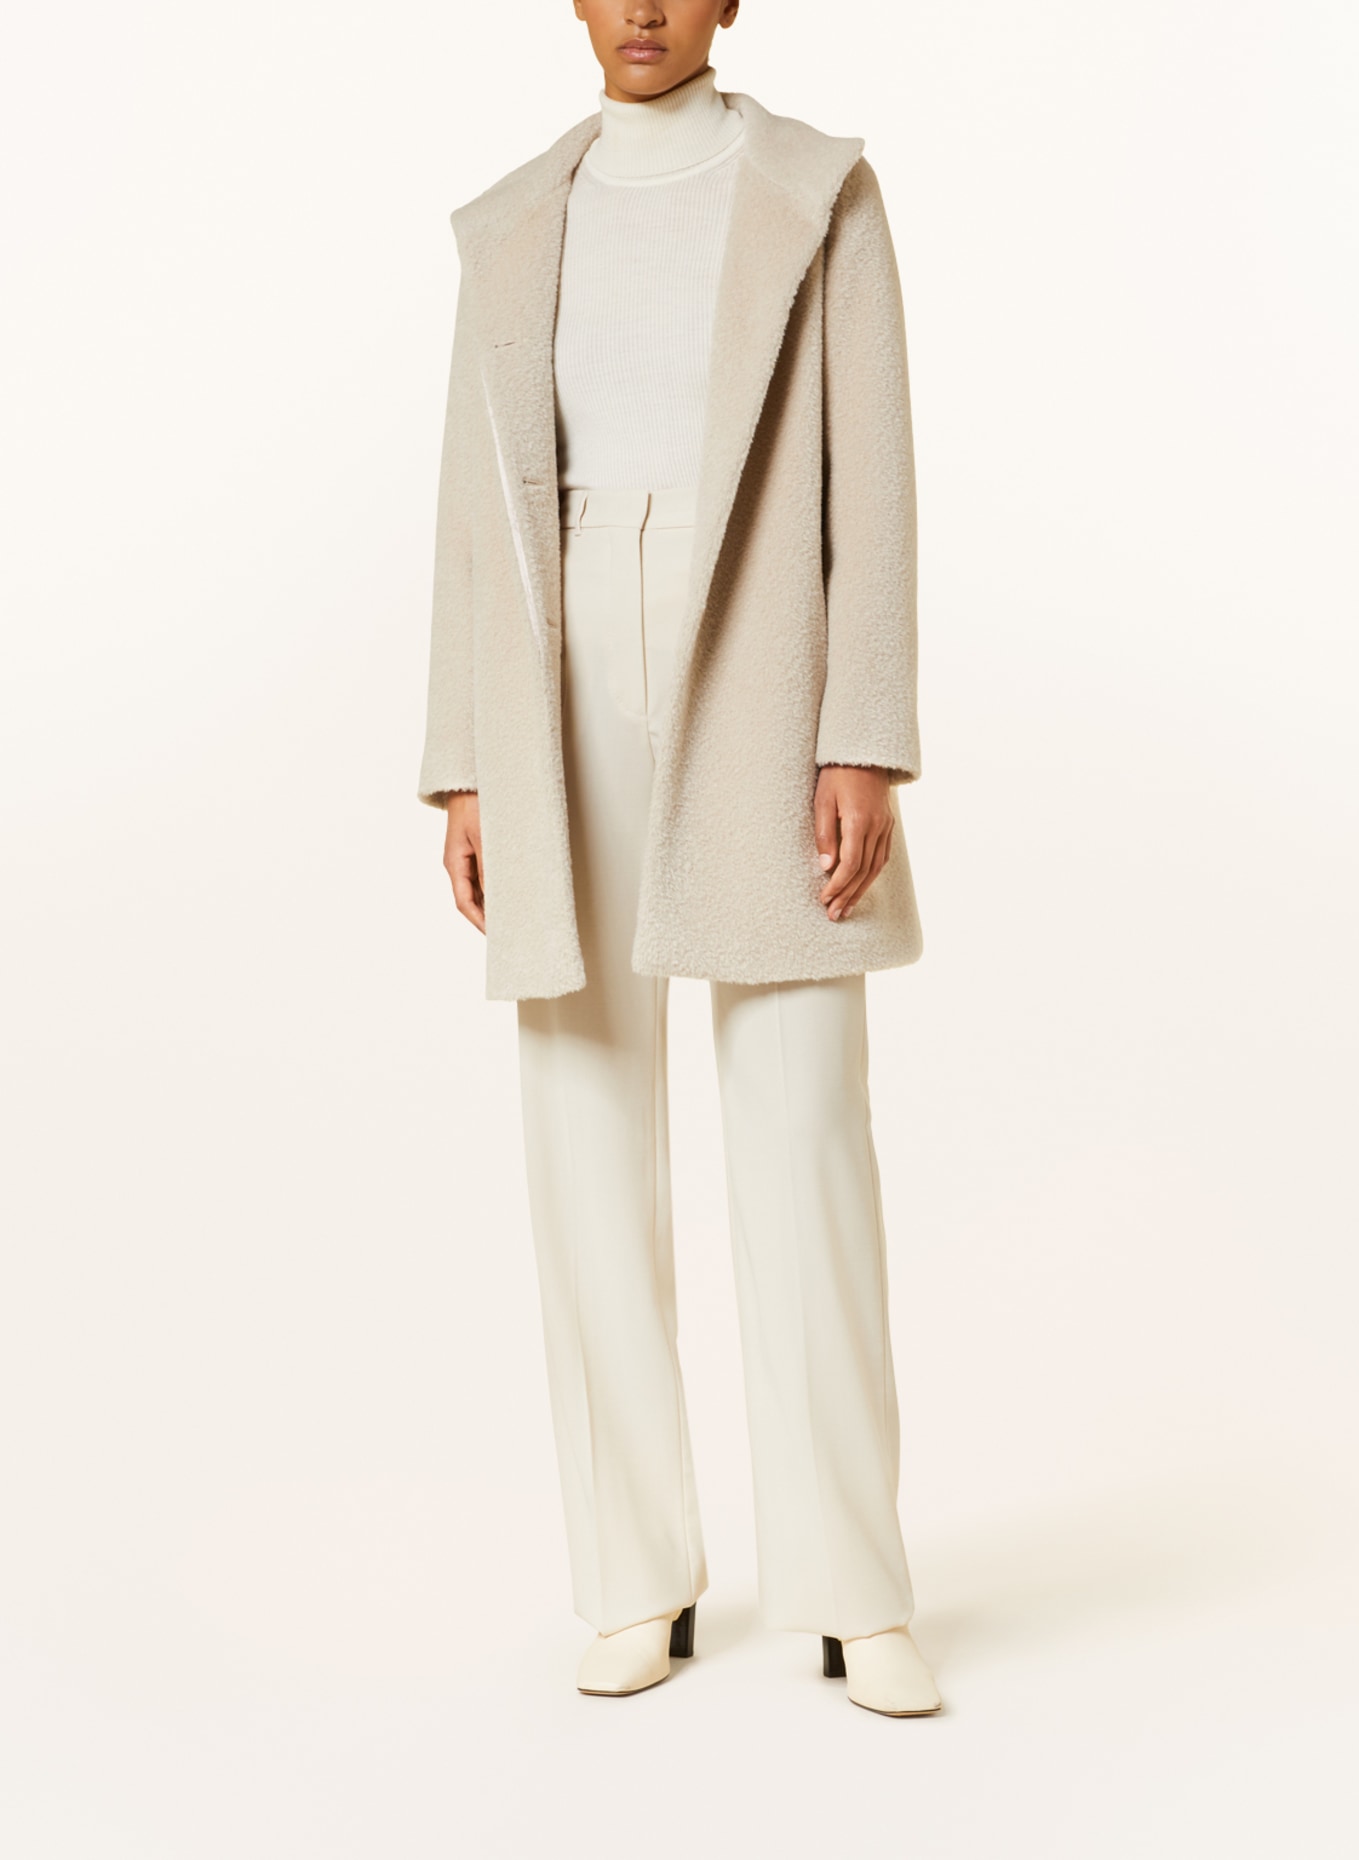 ICONS CINZIA ROCCA Wool coat with alpaca in beige | Breuninger